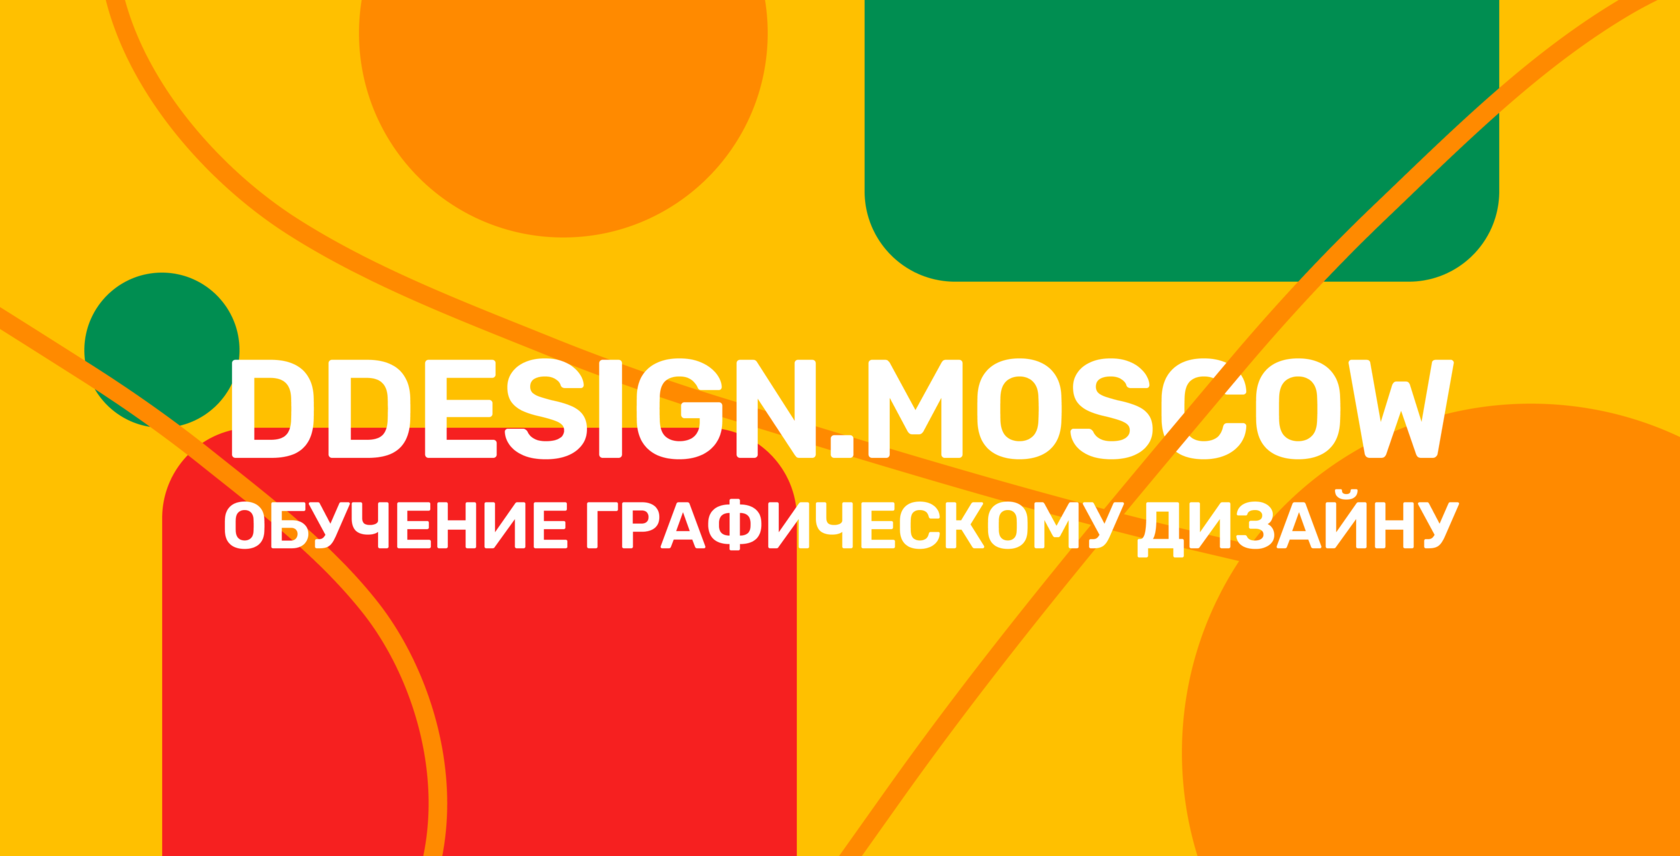 Свежие вакансии дизайнеров без опыта работы в Москве на сегодня